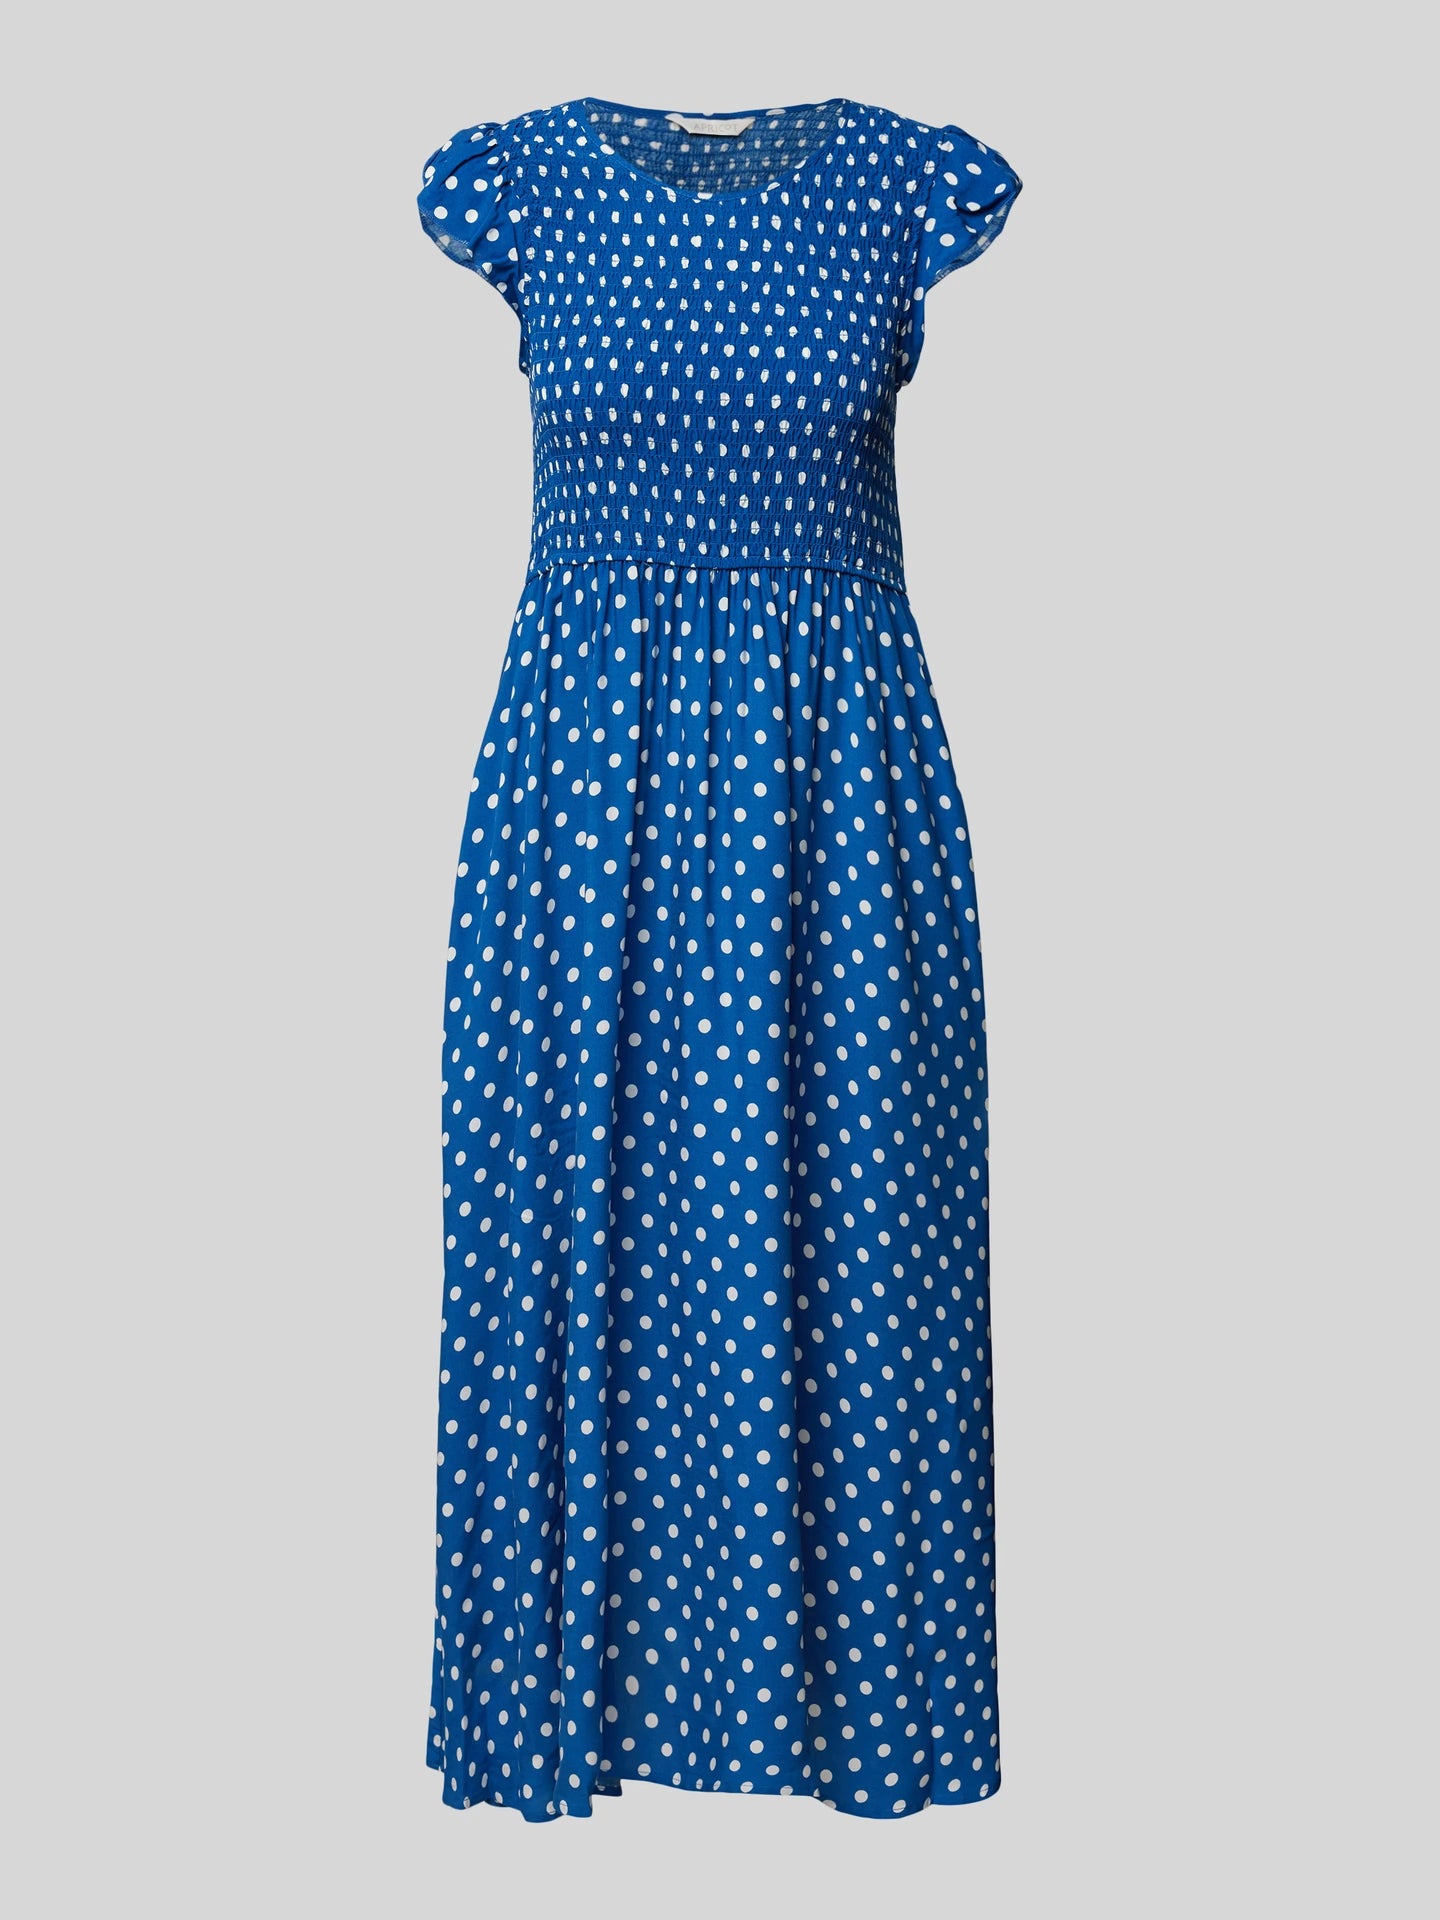 Apricot |  Scarf Print Midaxi Dress | 0 BLU